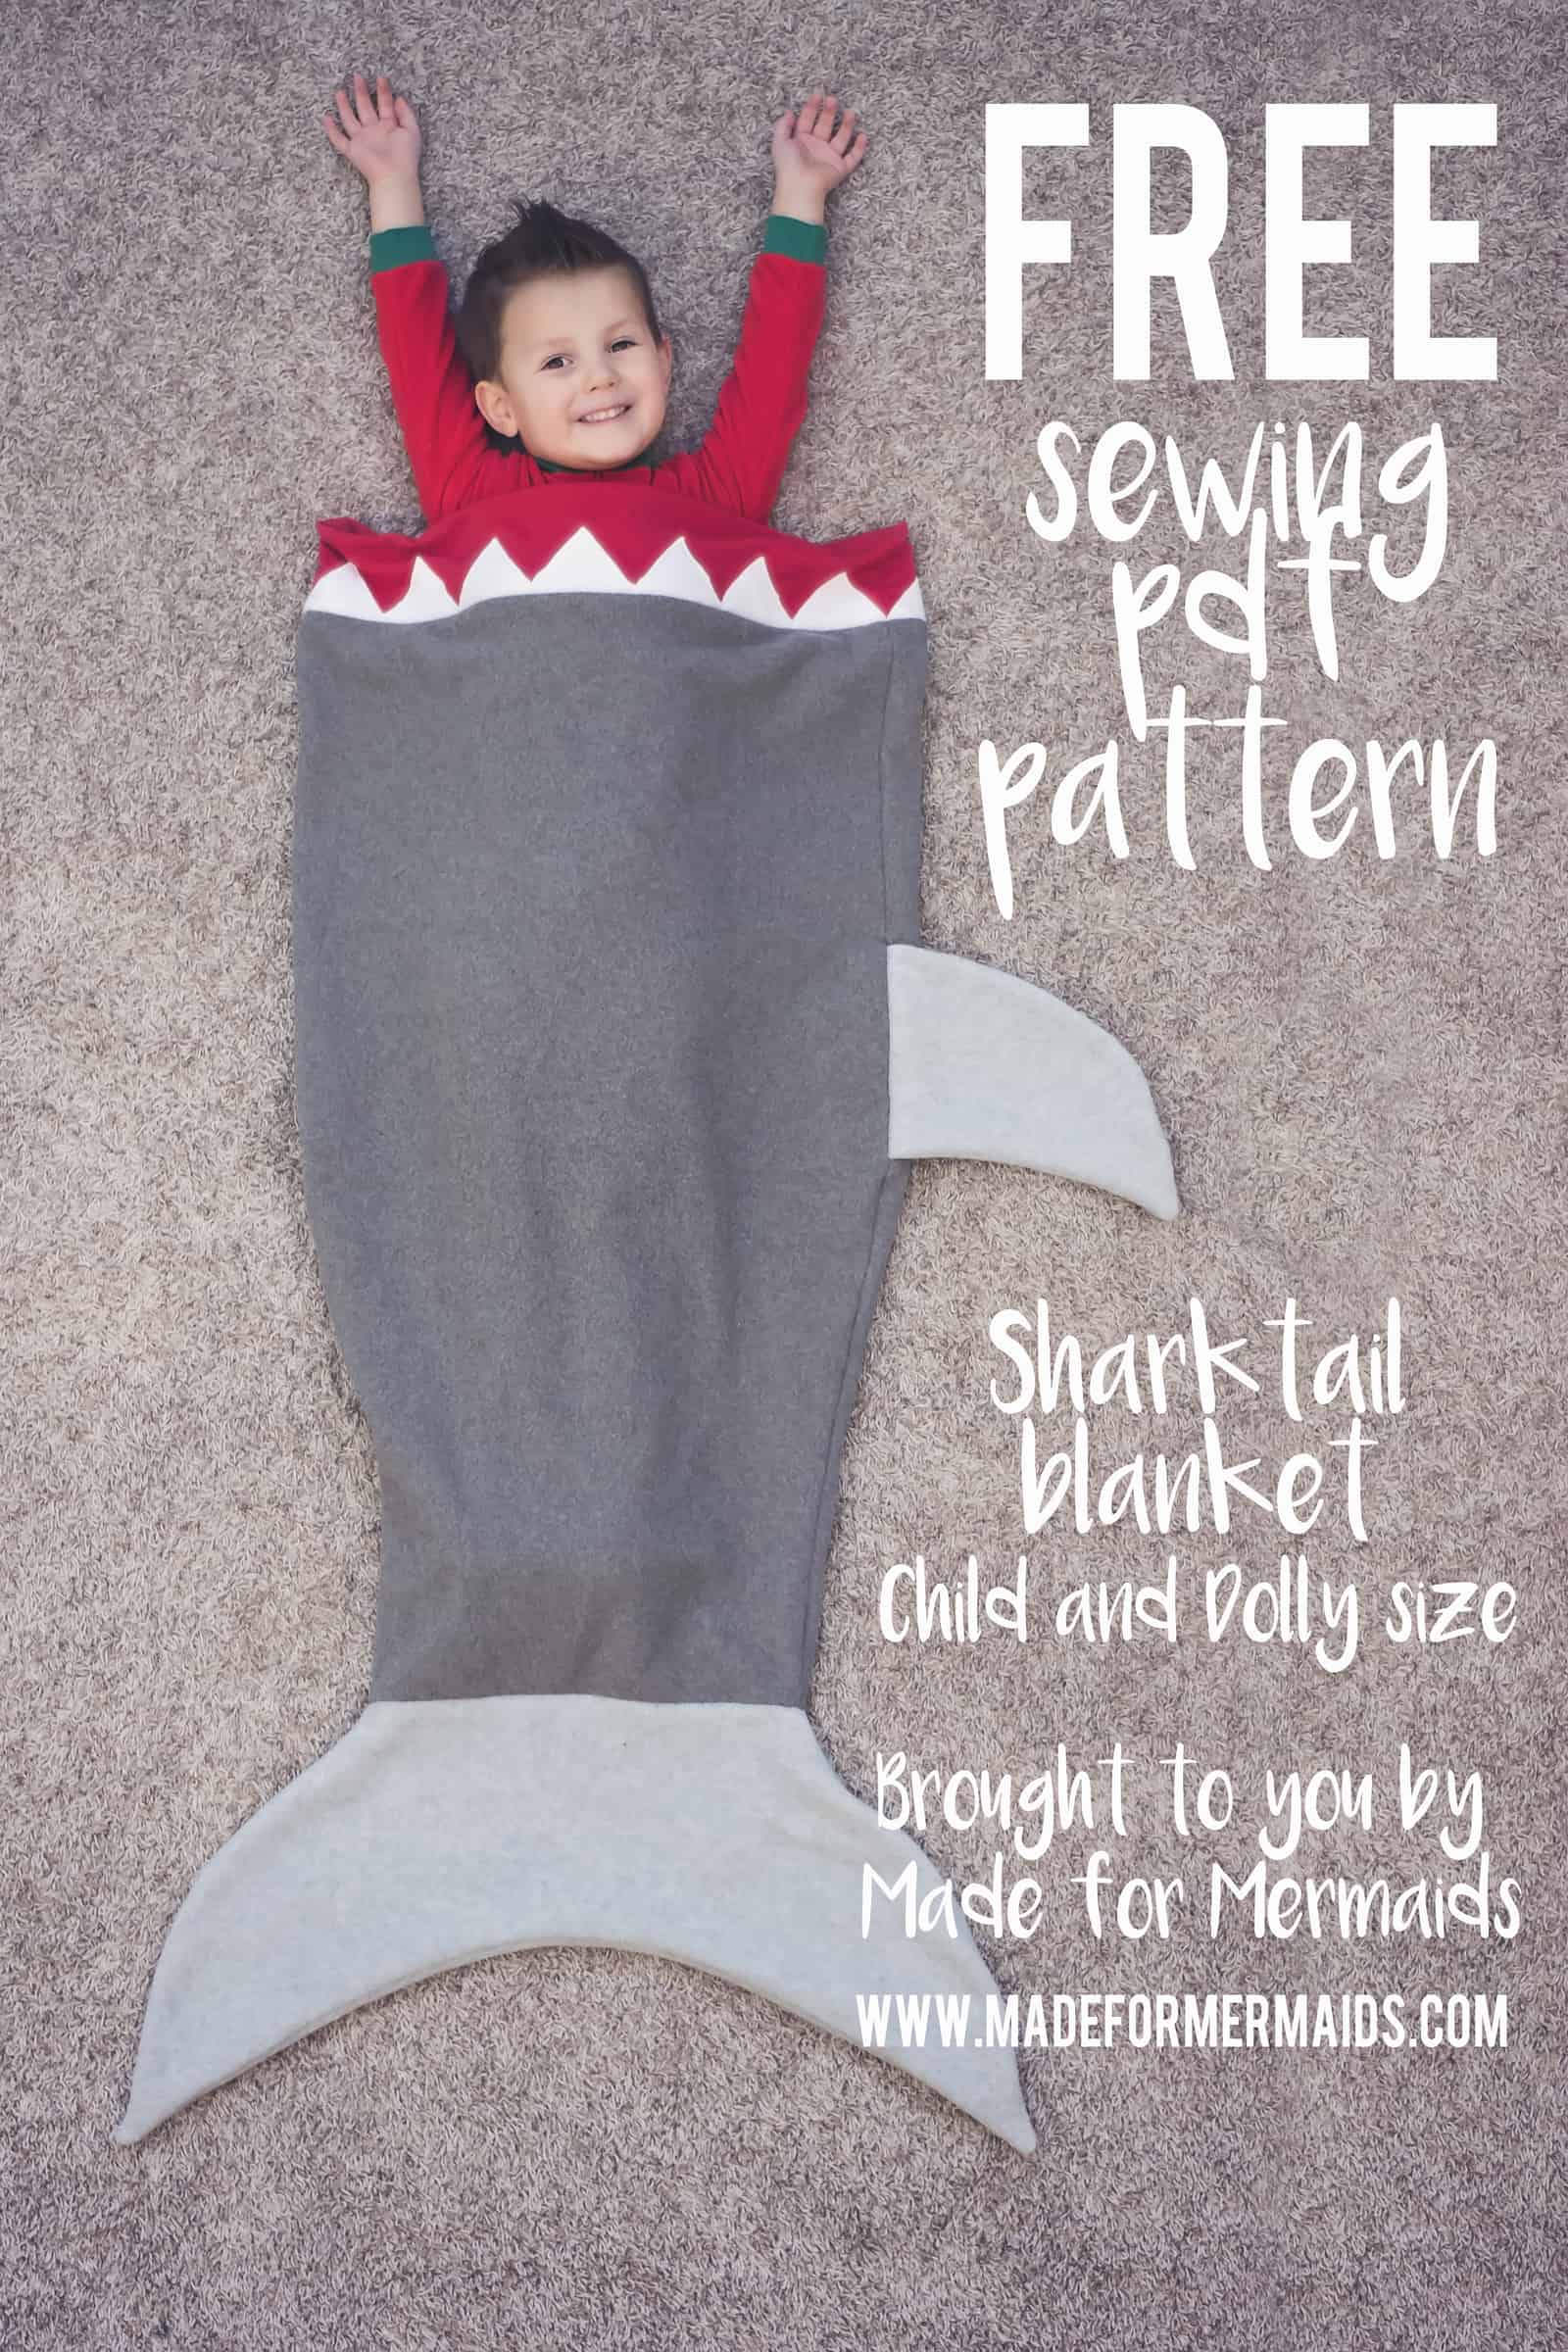 Shark Tail Blanket for Kids & Dolly